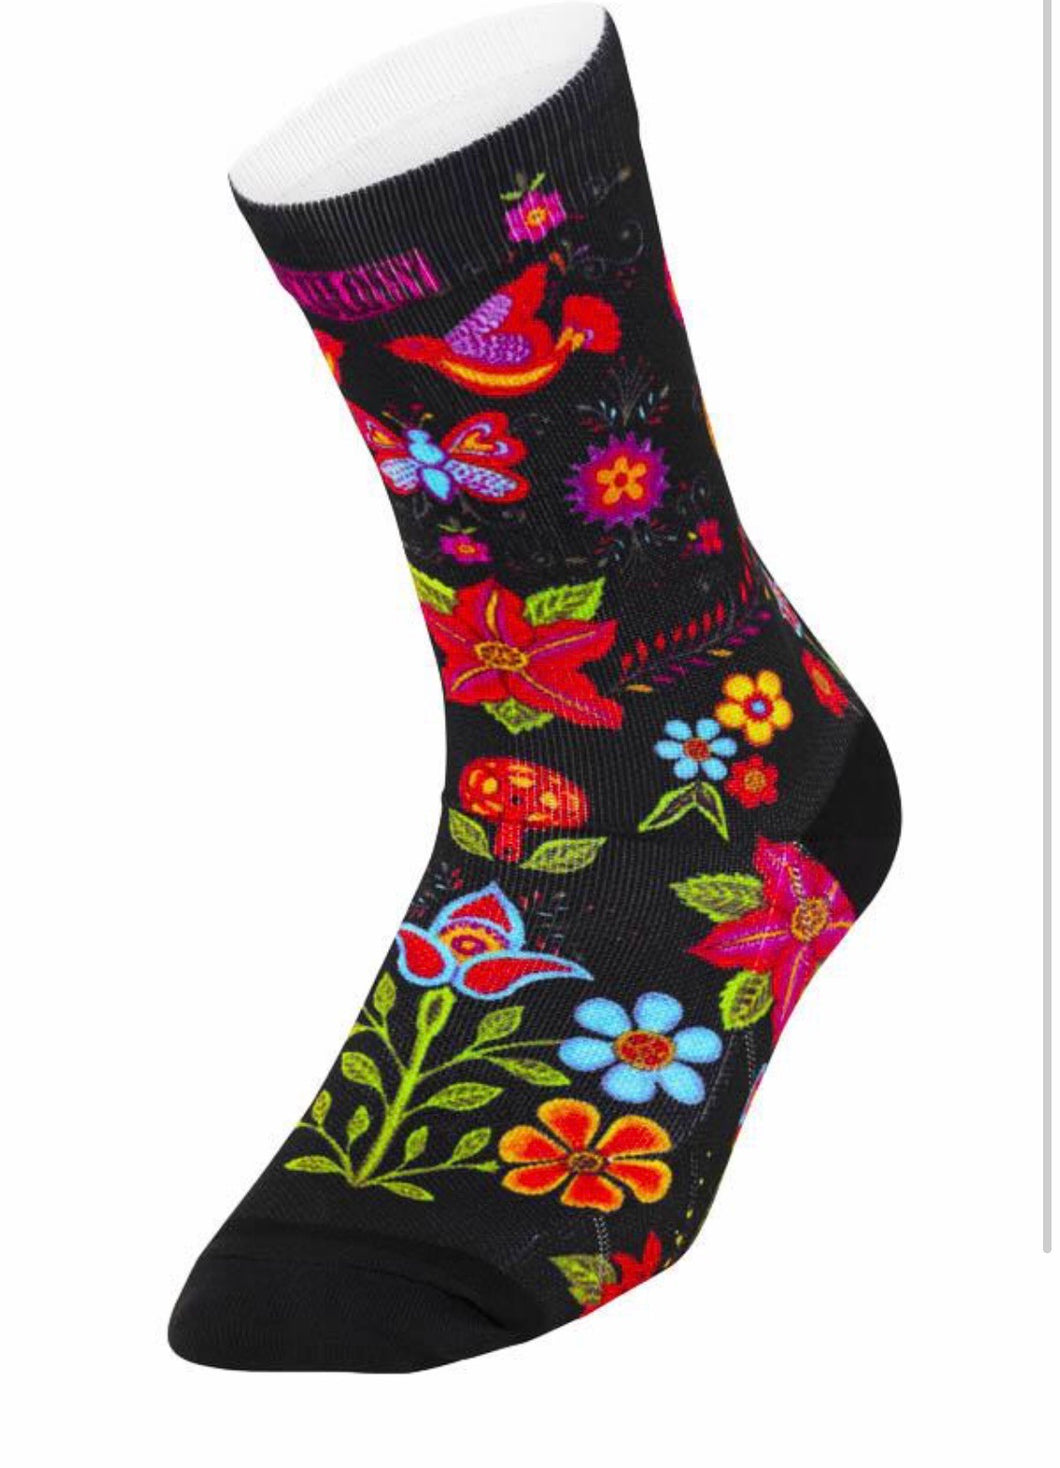 Cycology Quality Unisex Compression Cycling Socks - Design Frida